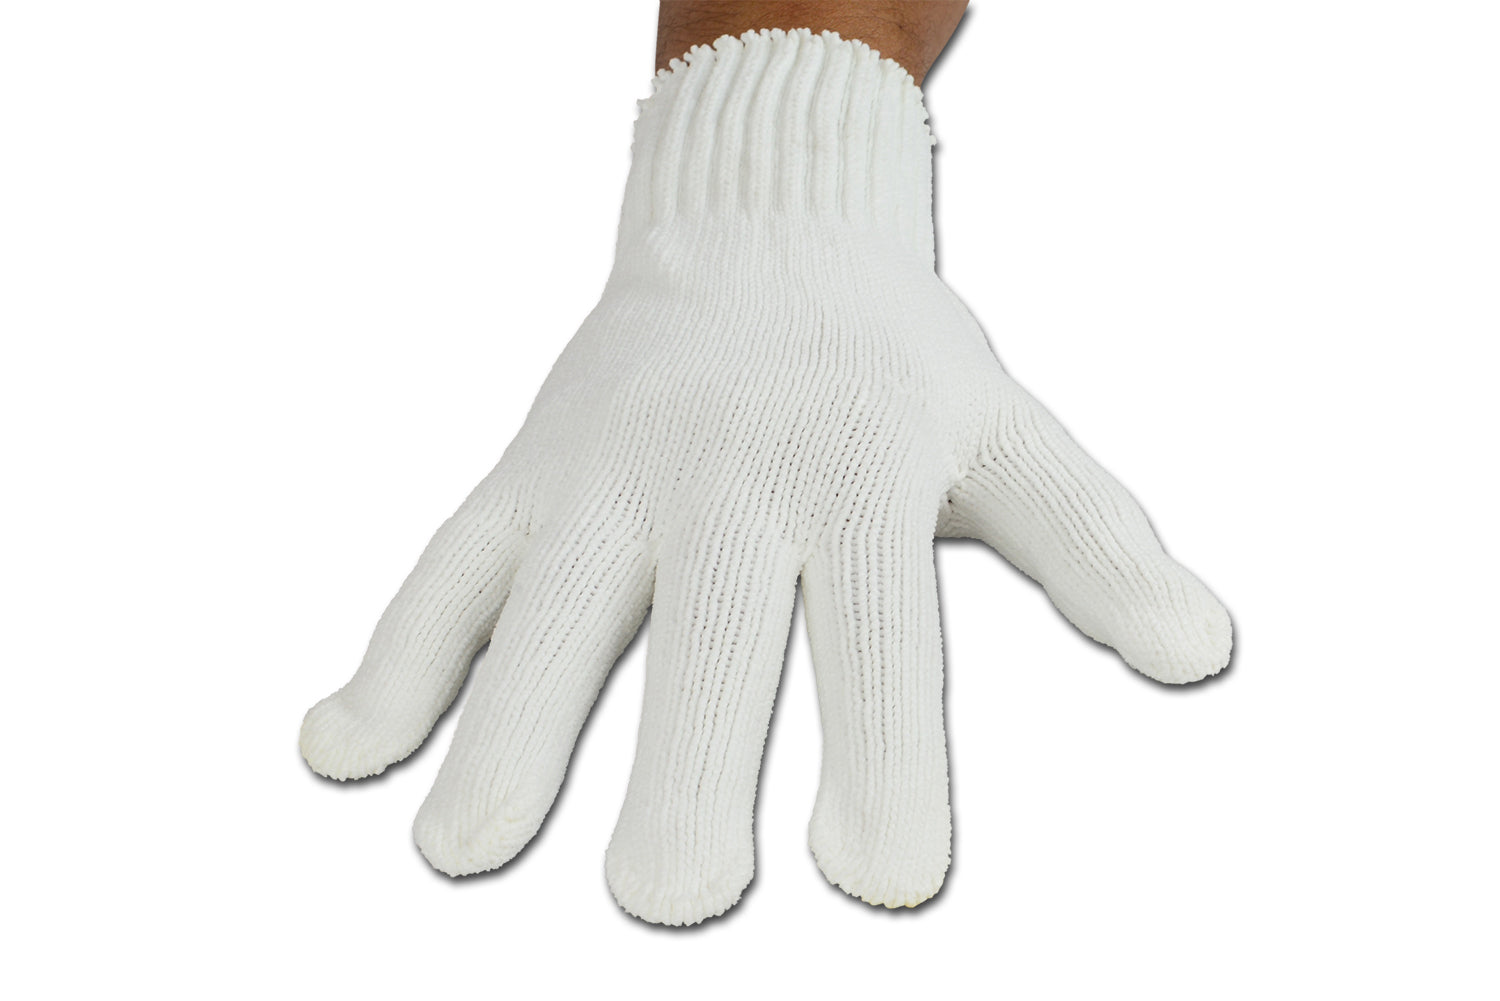 100% Microfiber Gloves